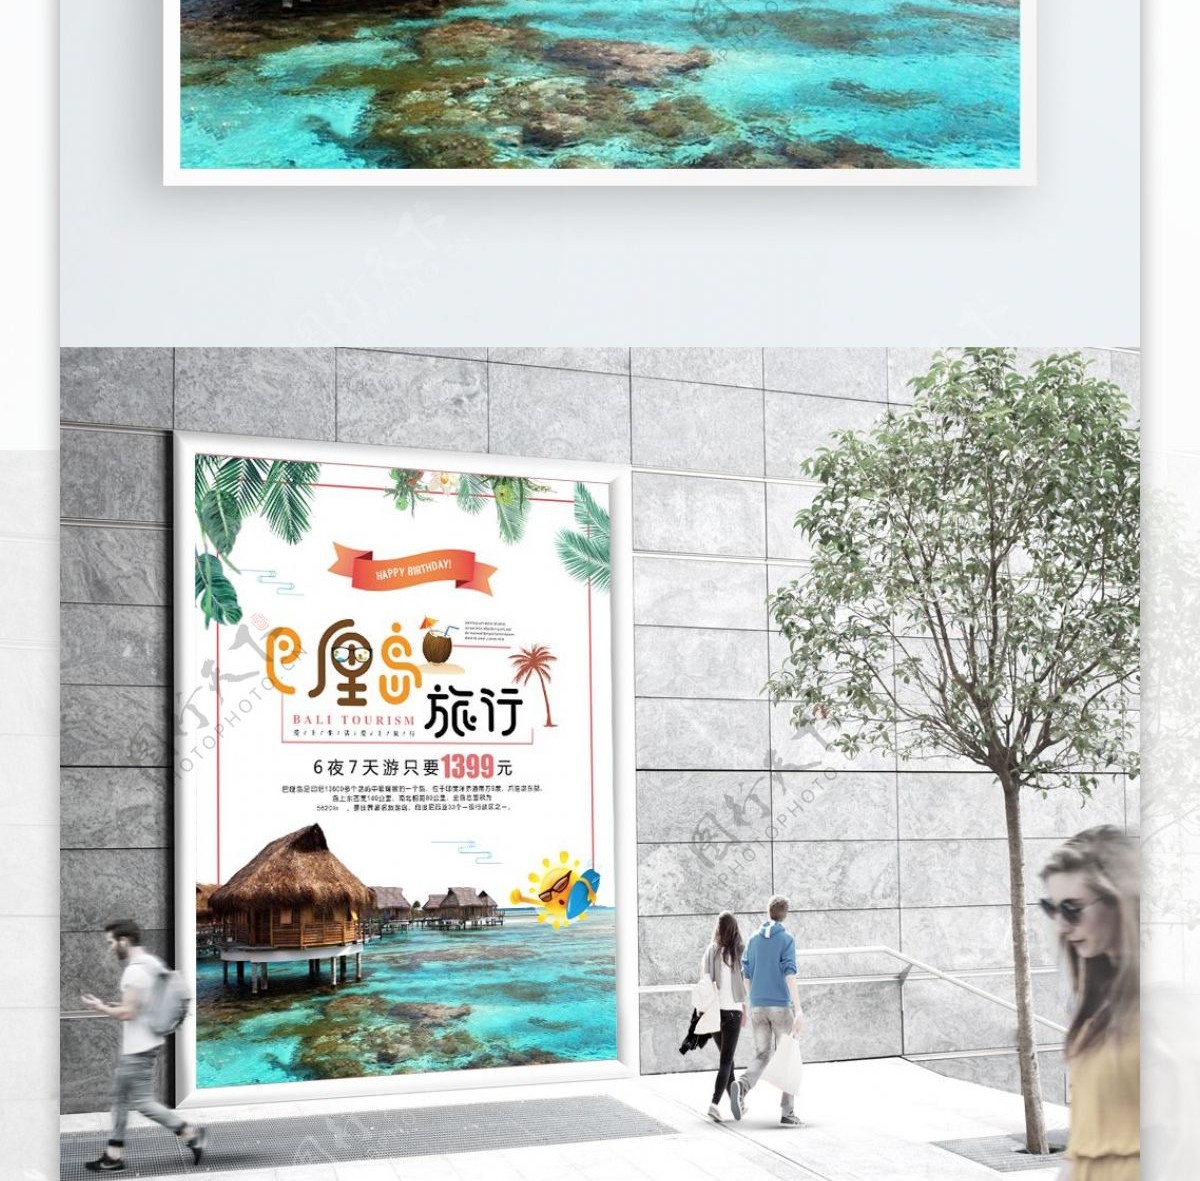 简约大气巴厘岛旅行促销海报